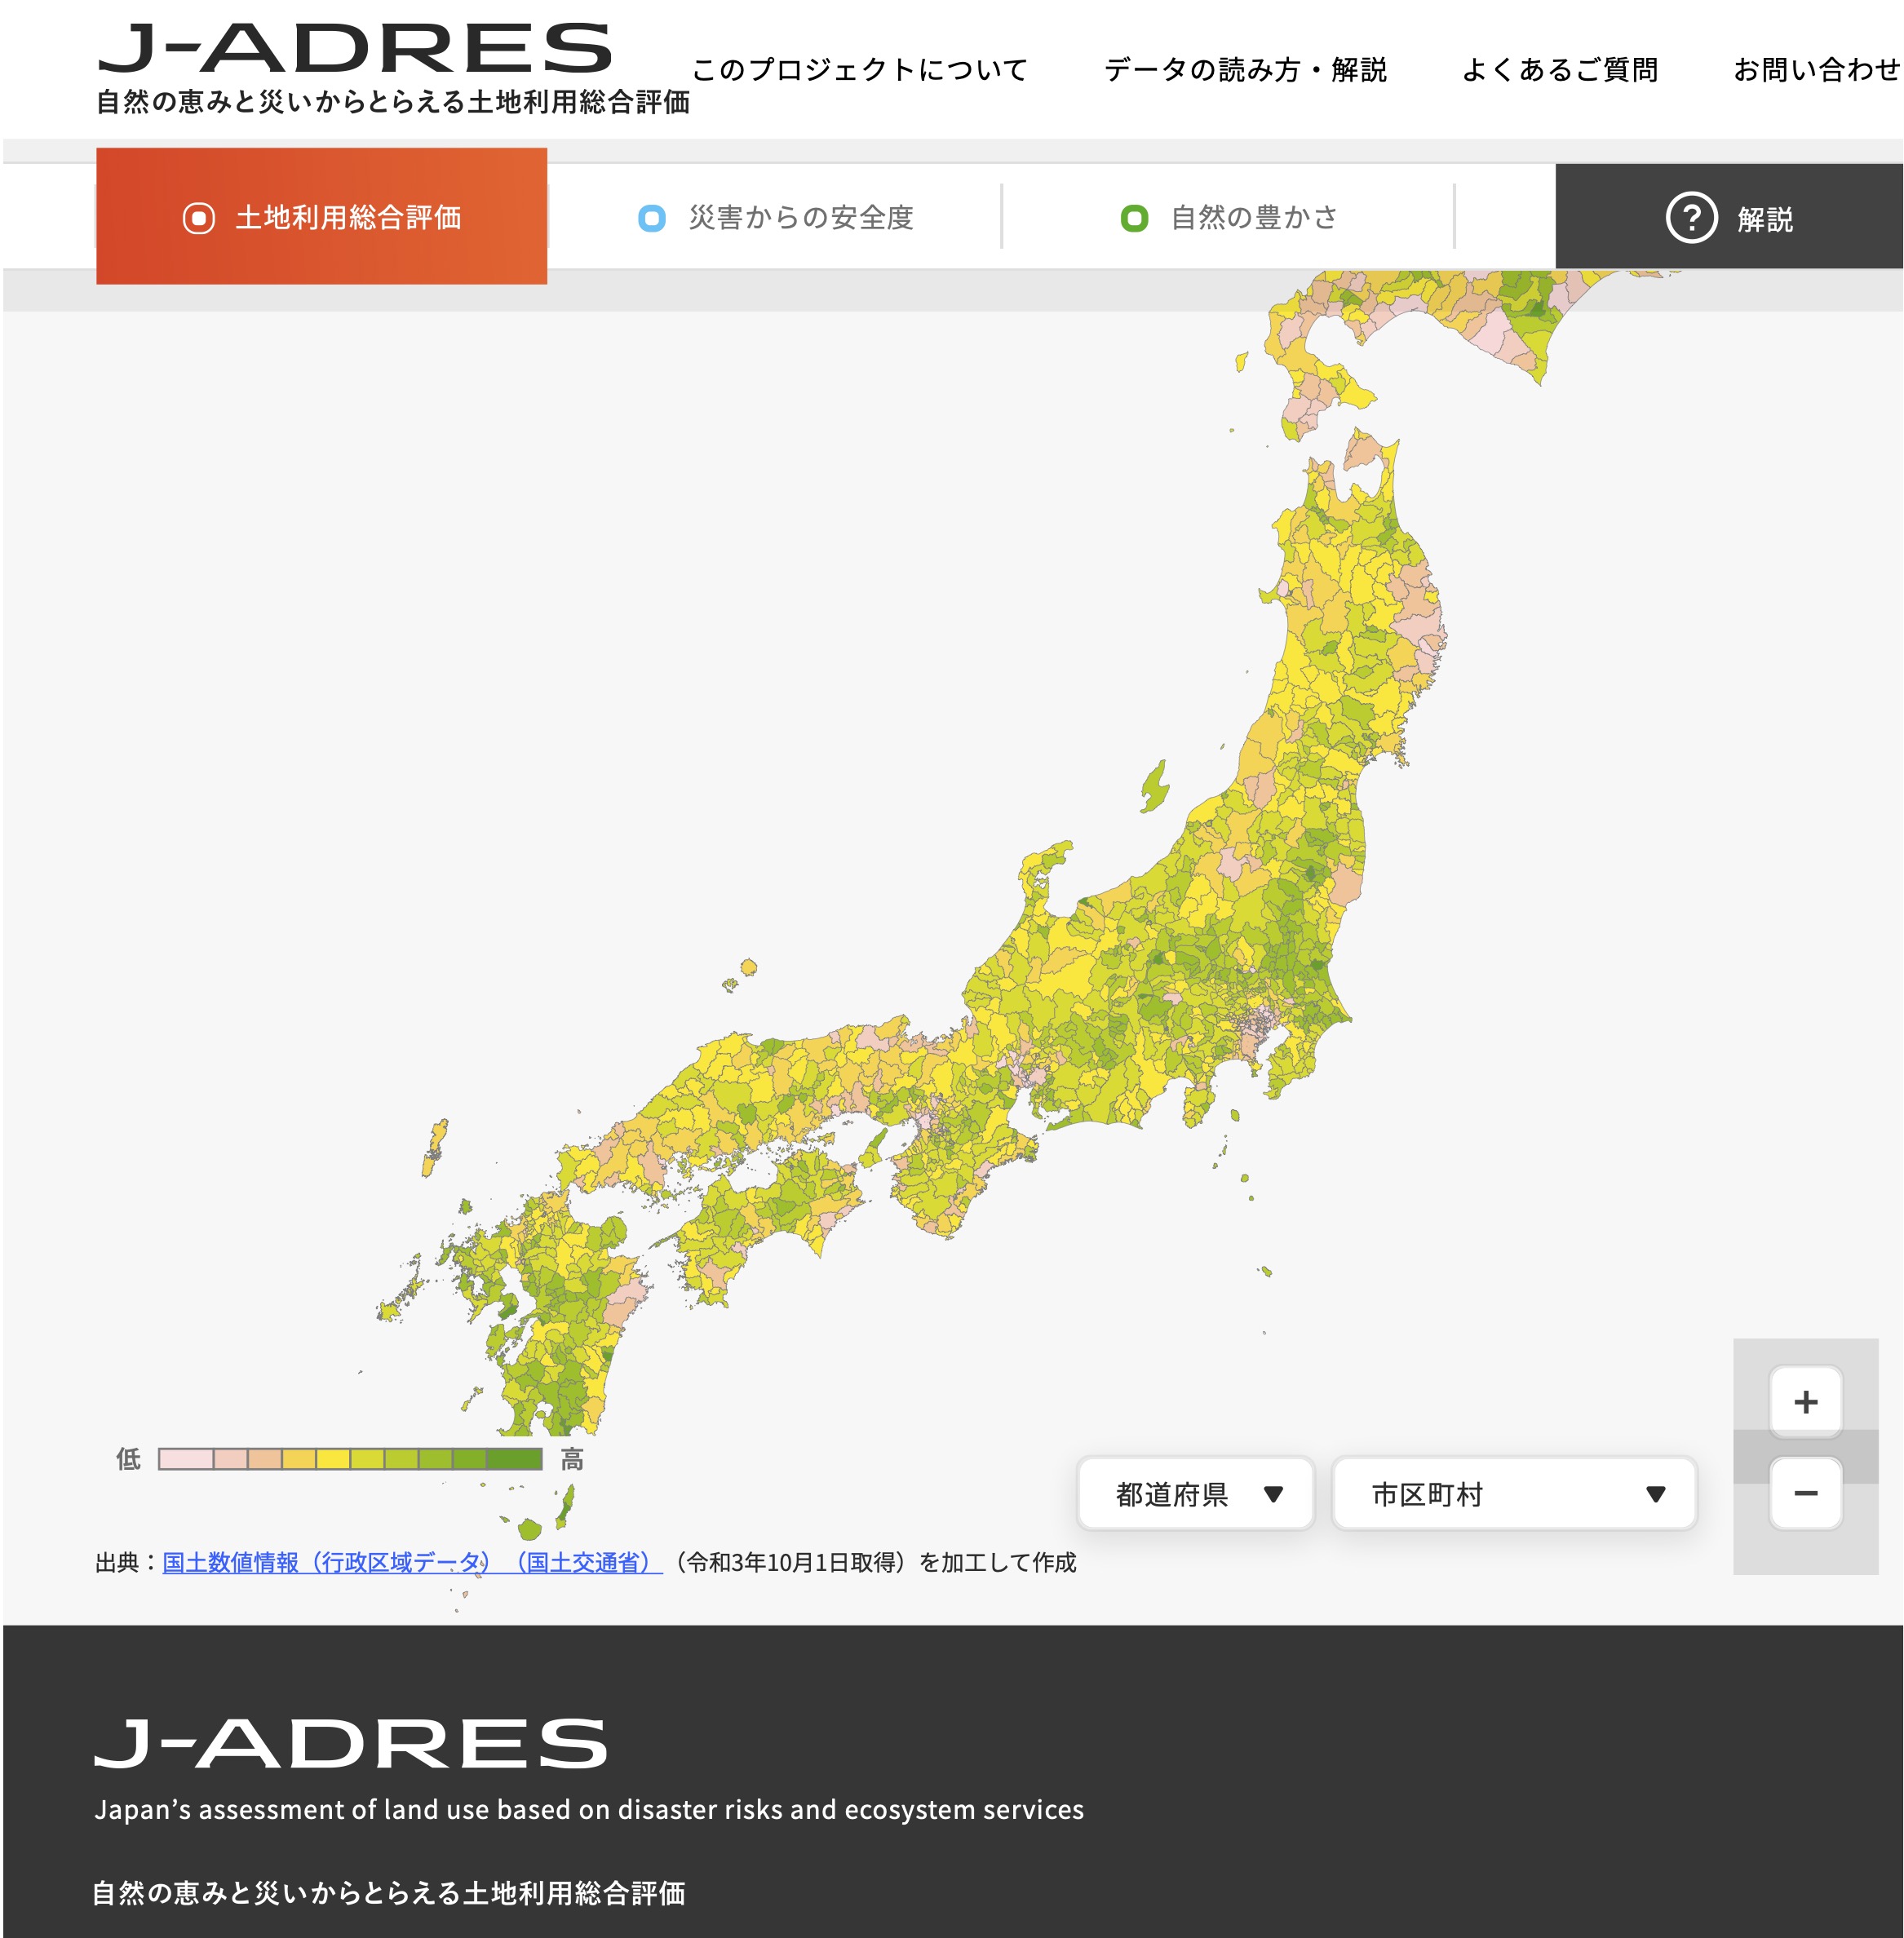 「自然の恵みと災いからとらえる土地利用総合評価」を発信するためのウェブサイト J-ADRESのイメージ